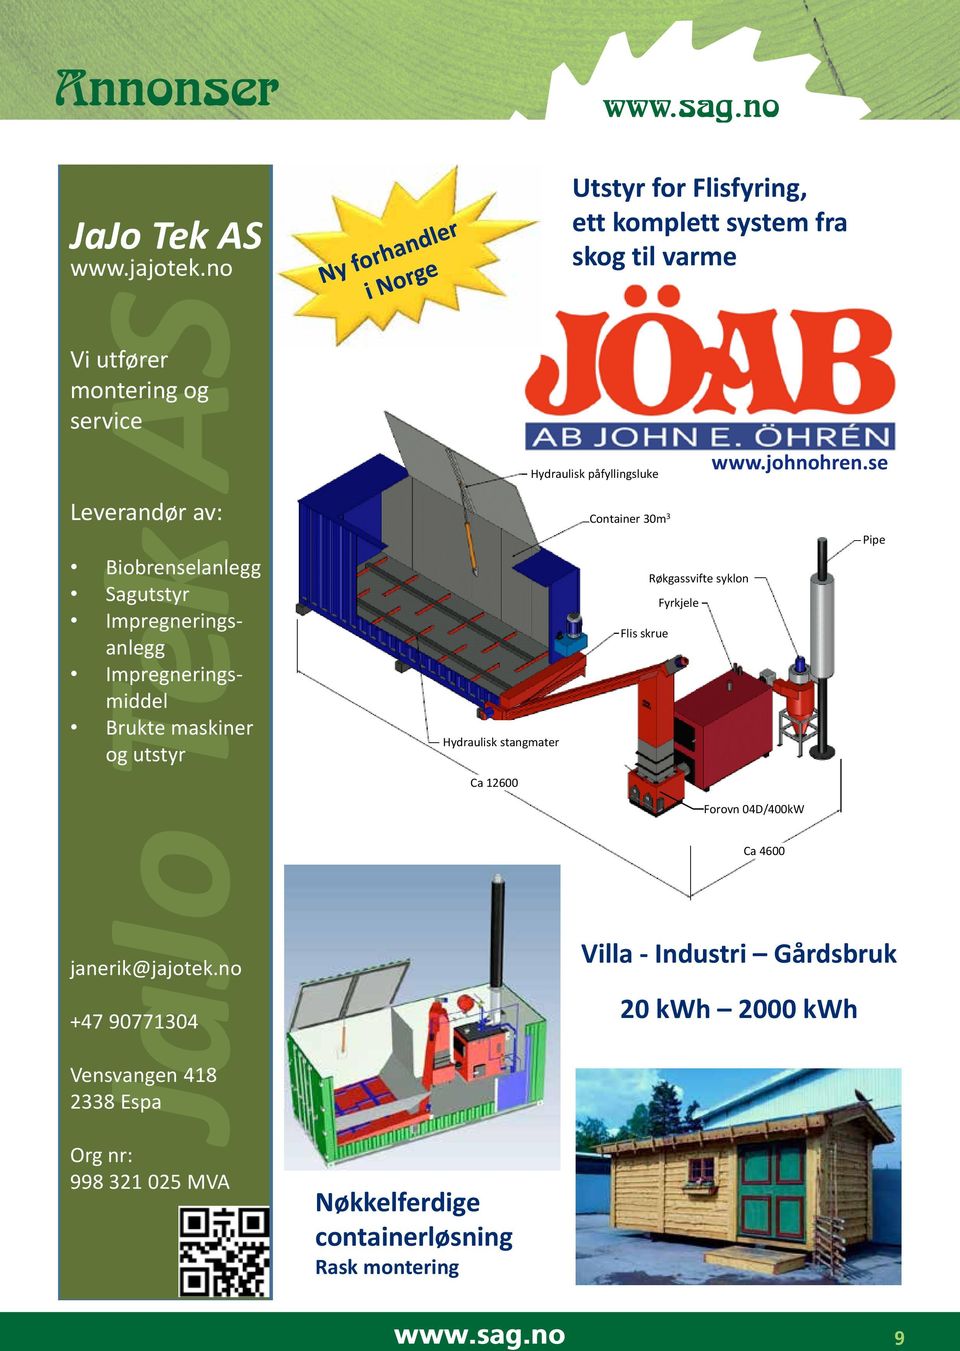 Impregneringsanlegg Impregneringsmiddel Brukte maskiner og utstyr Hydraulisk påfyllingsluke Container 30m 3 www.johnohren.